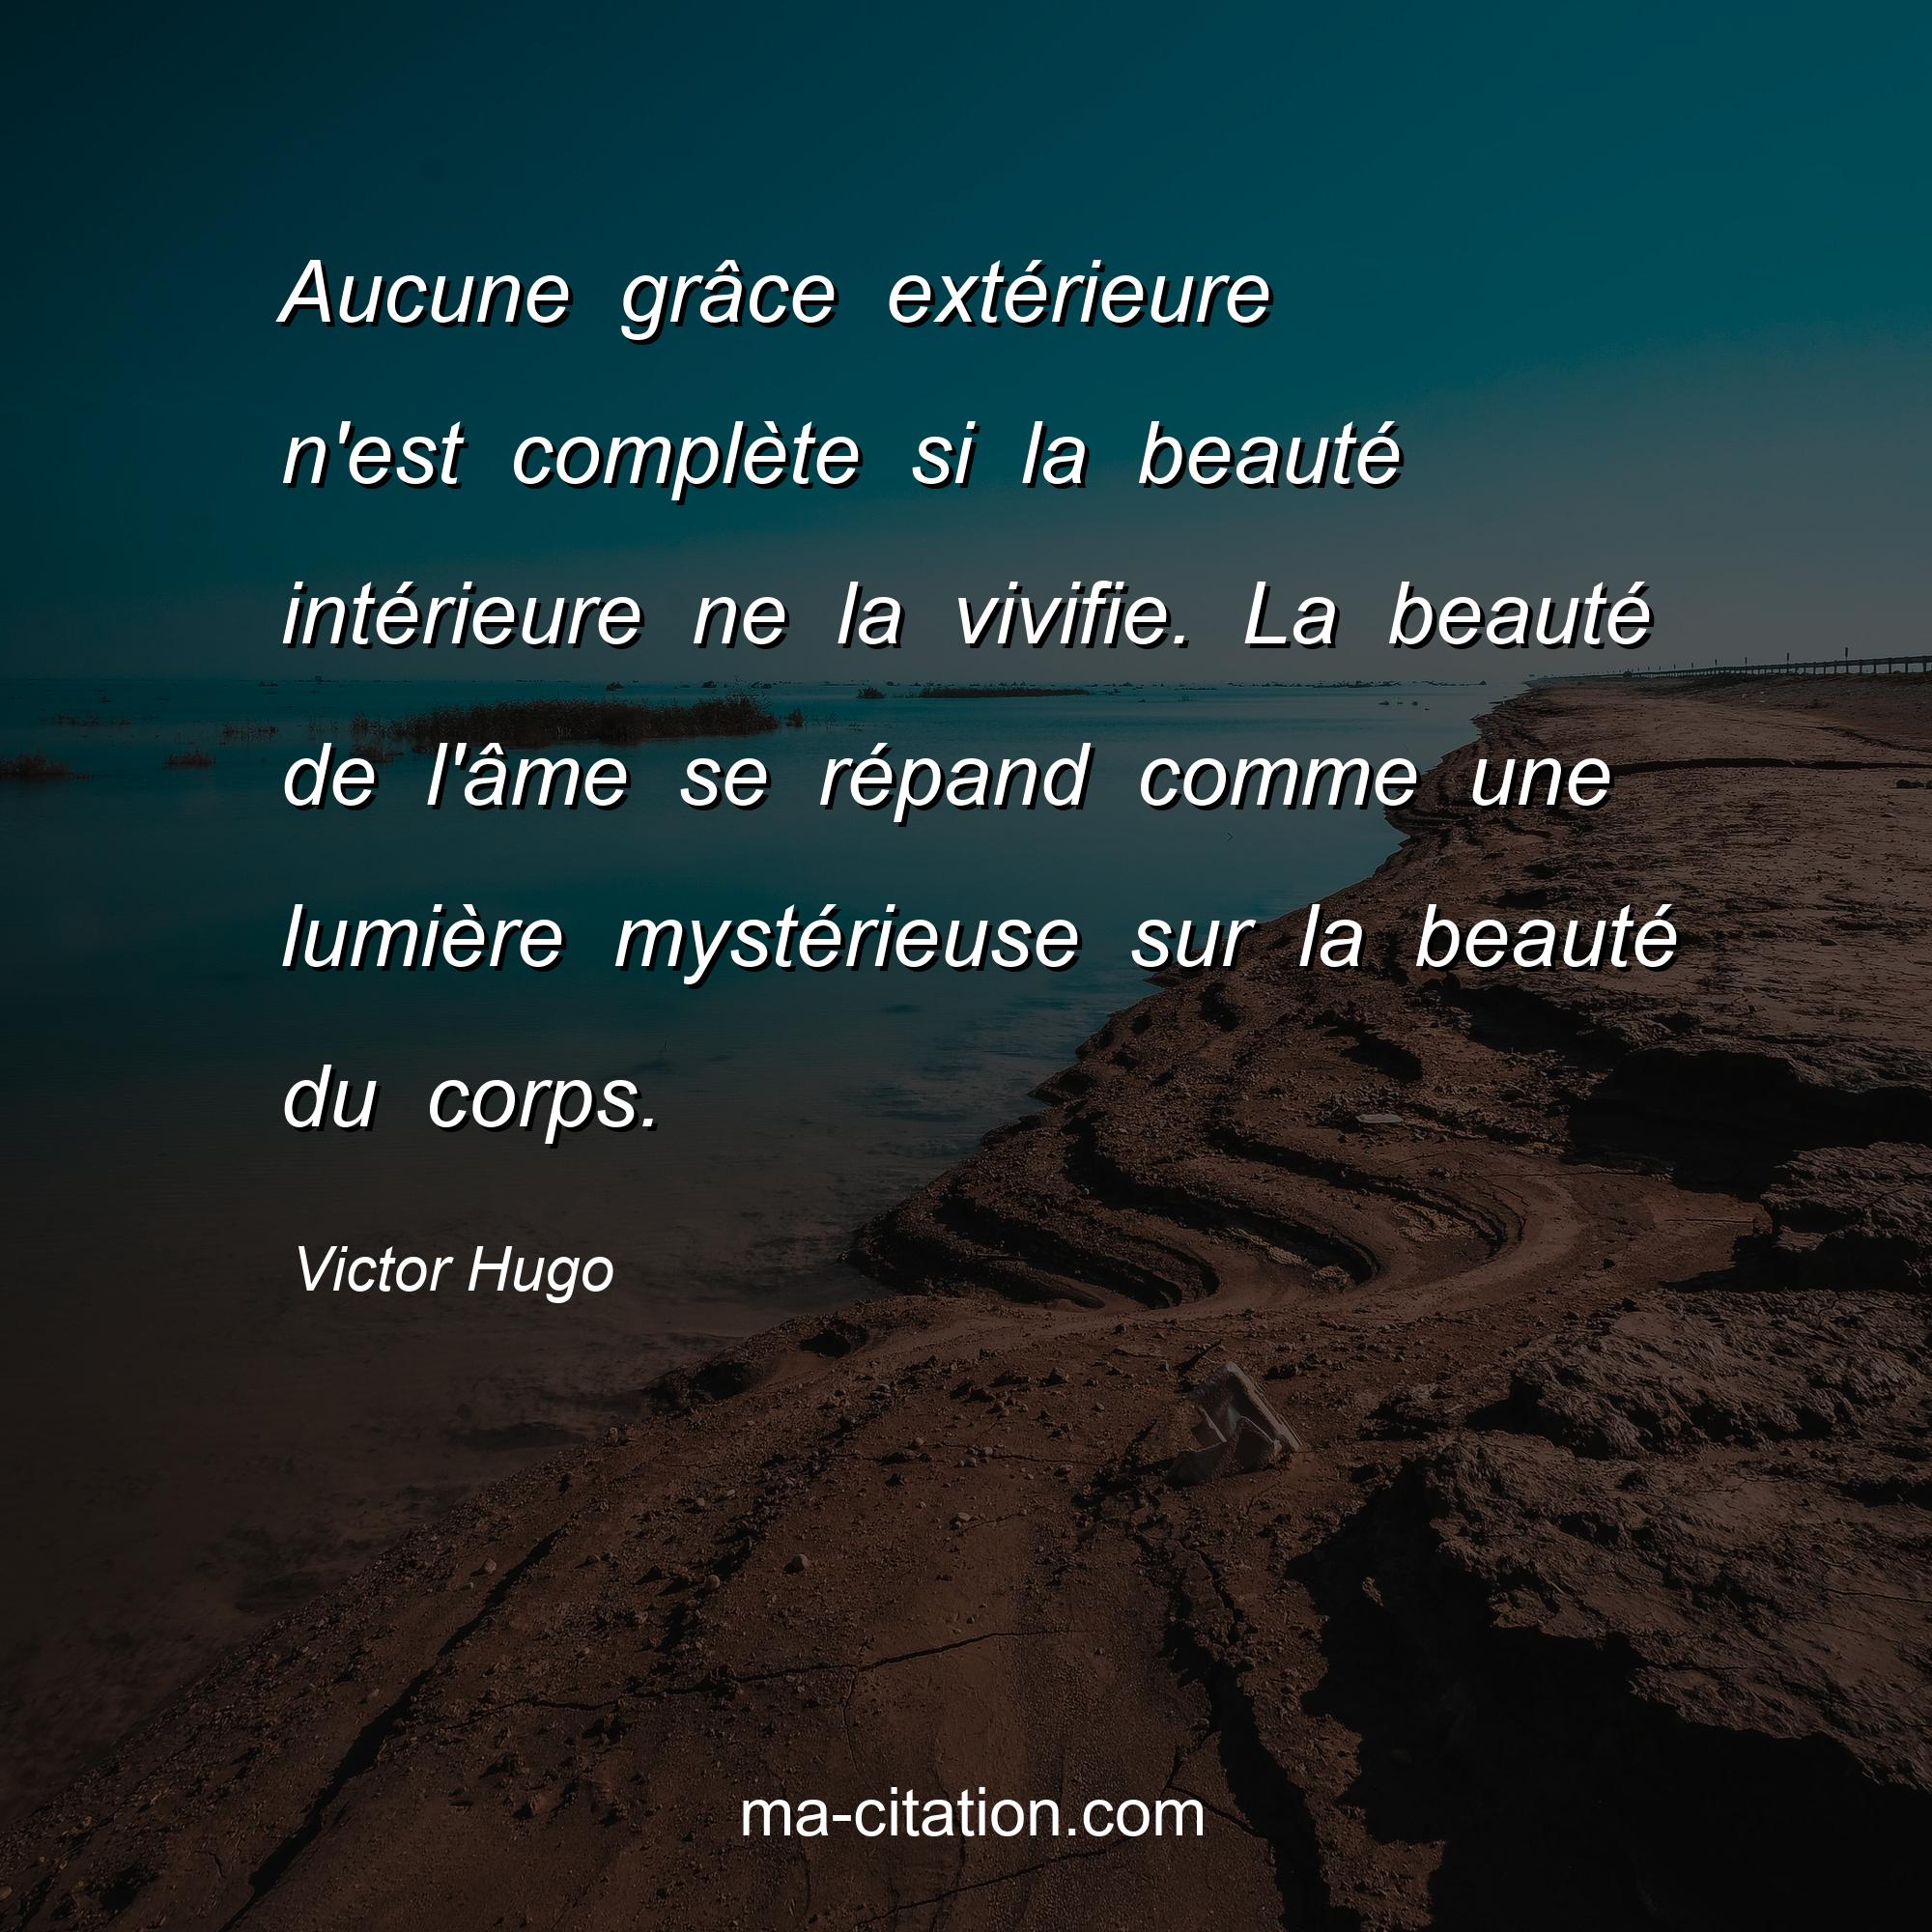 Victor Hugo : Aucune grâce extérieure n'est complète si la beauté intérieure ne la vivifie. La beauté de l'âme se répand comme une lumière mystérieuse sur la beauté du corps.